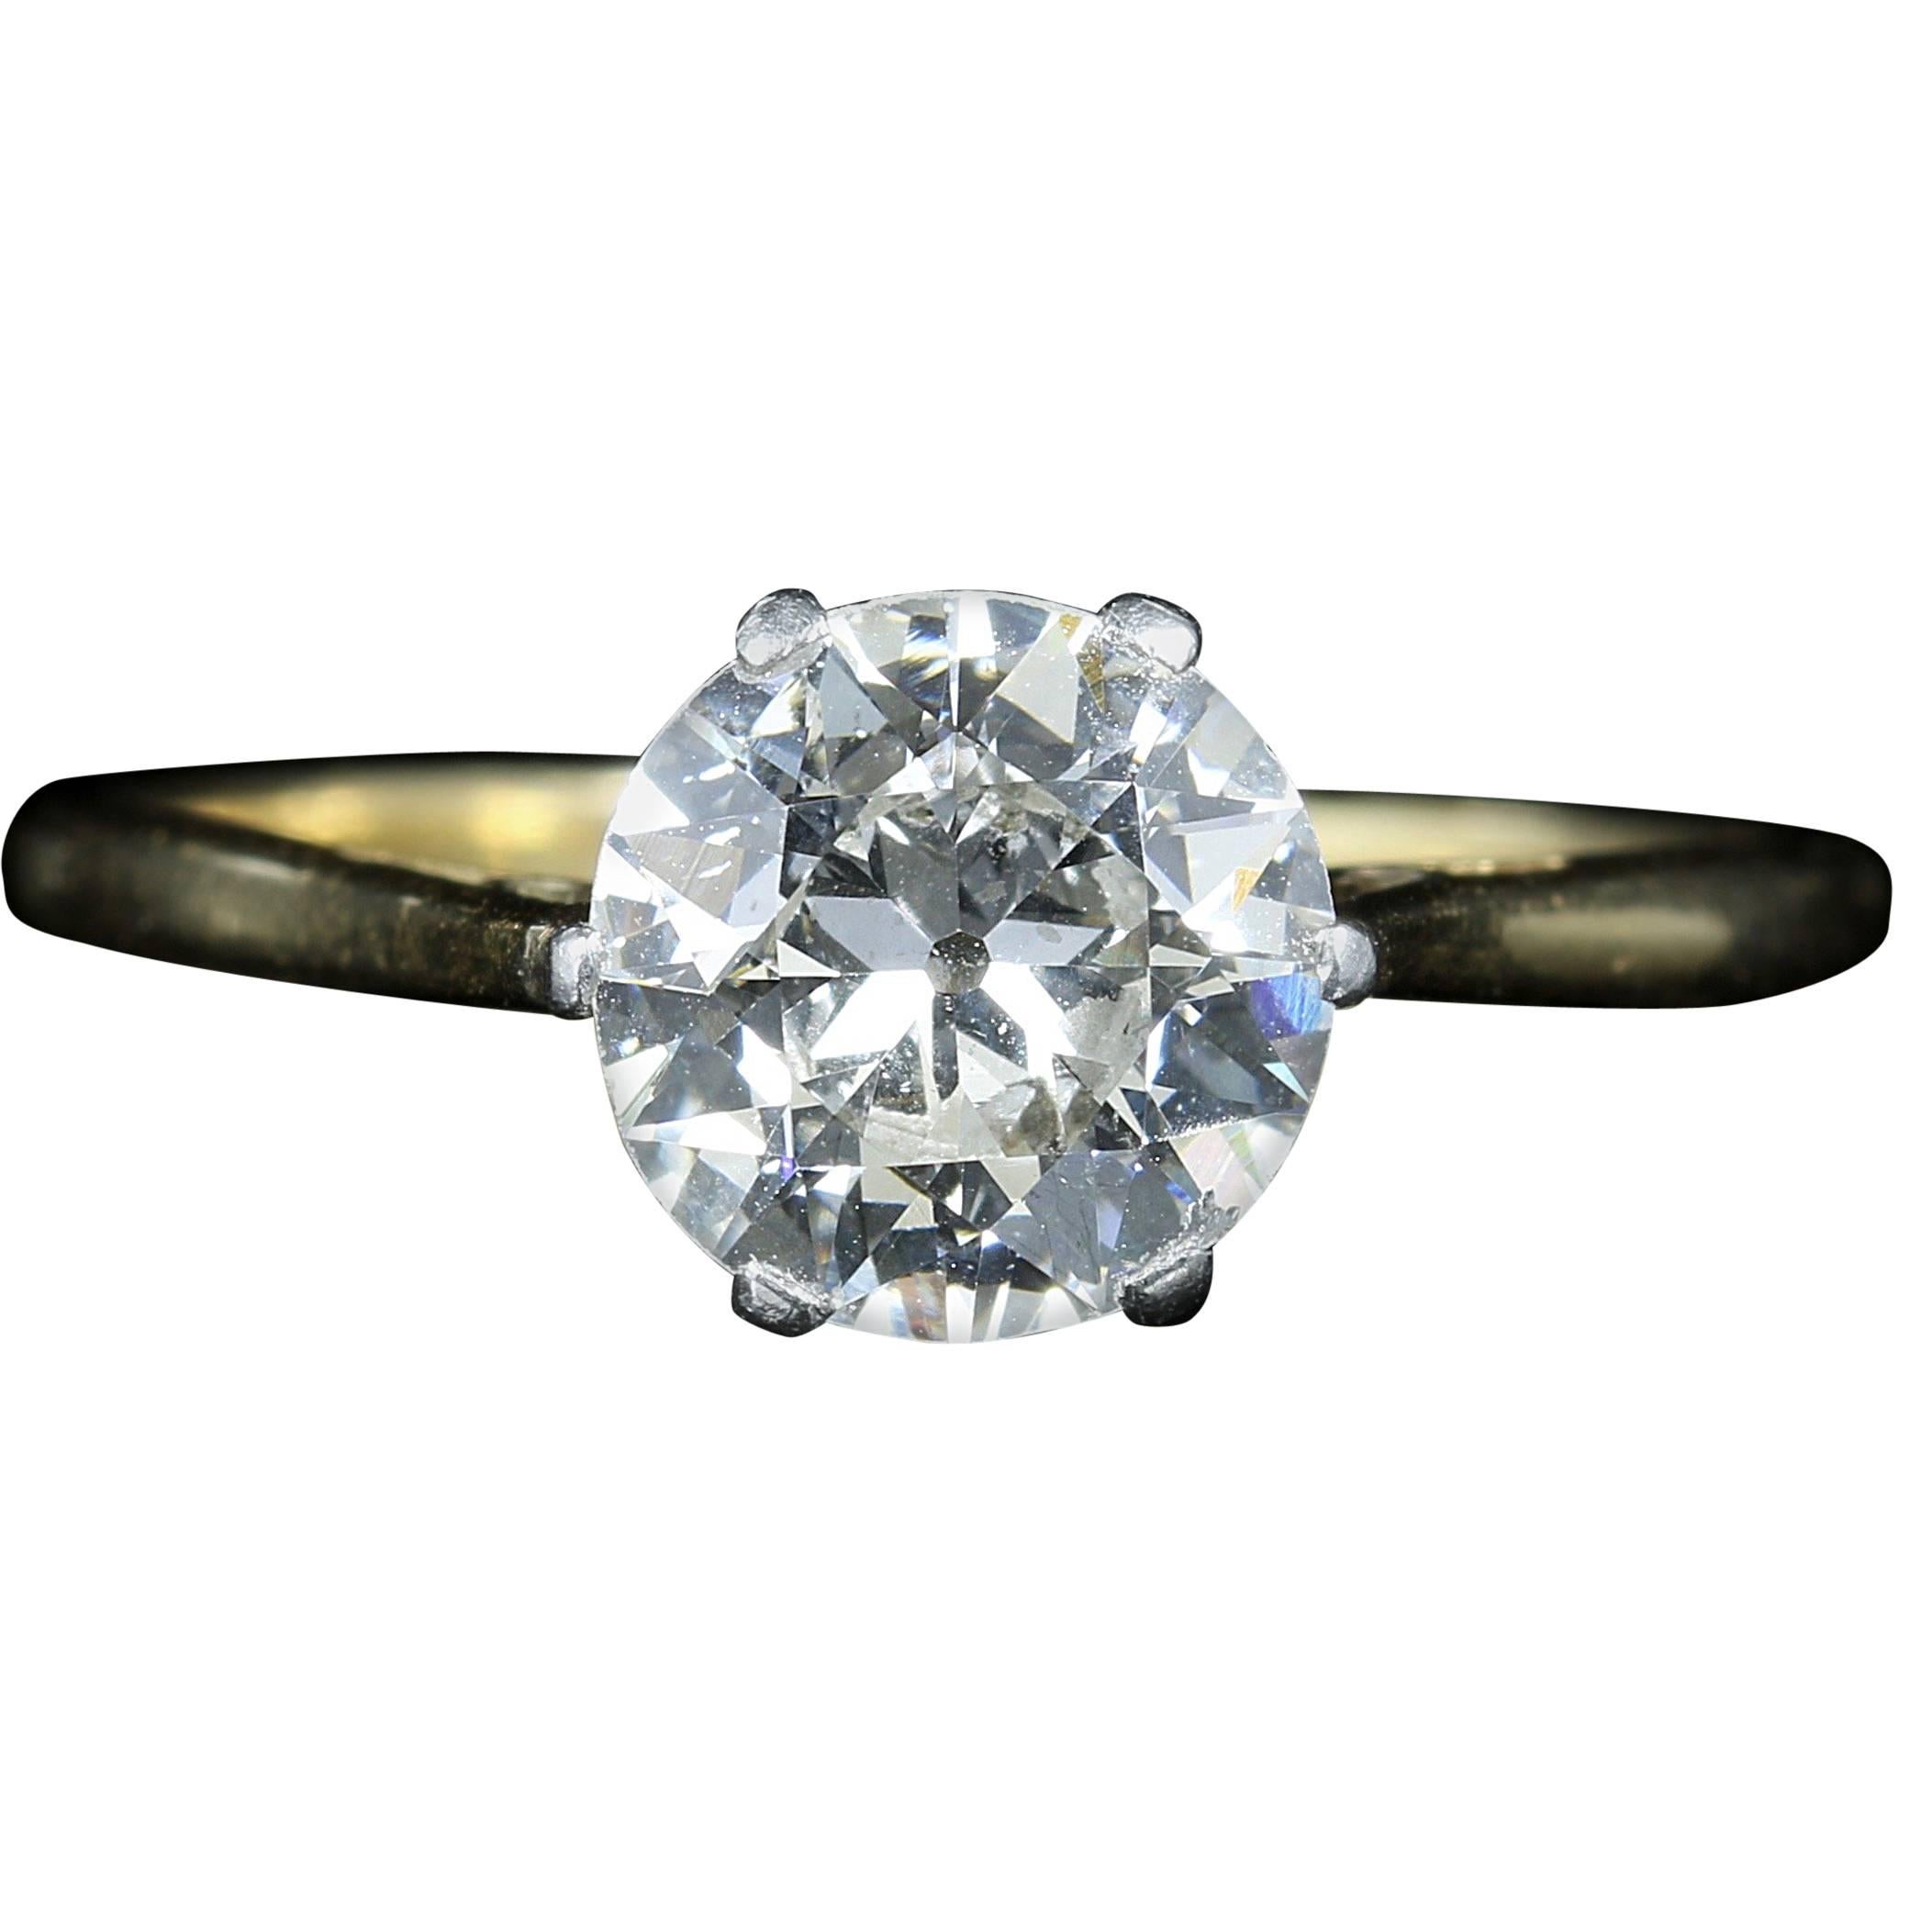 Antique Victorian 1.60 Carat Diamond in 18 Carat Gold Diamond Solitaire Ring